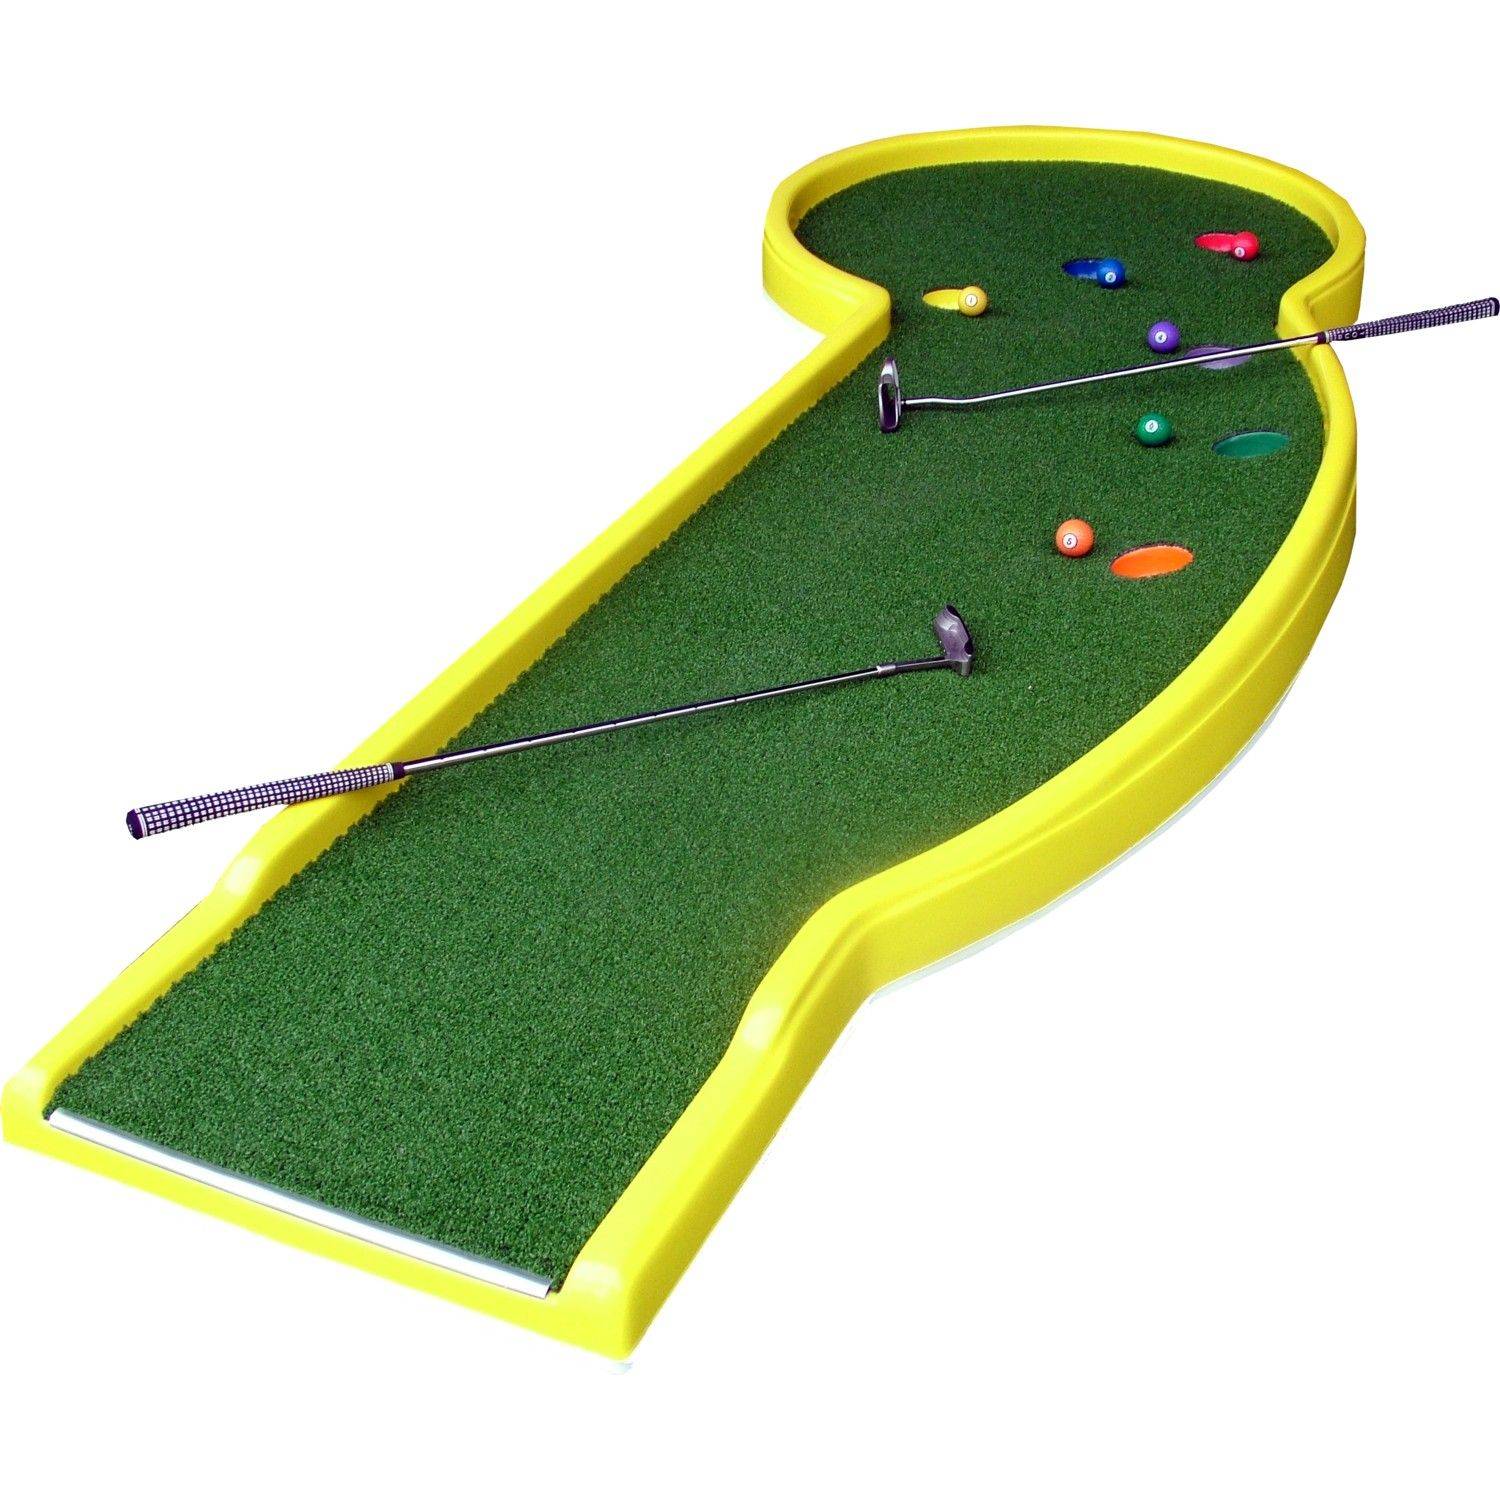 Строительство площадок и полей для мини-гольфа